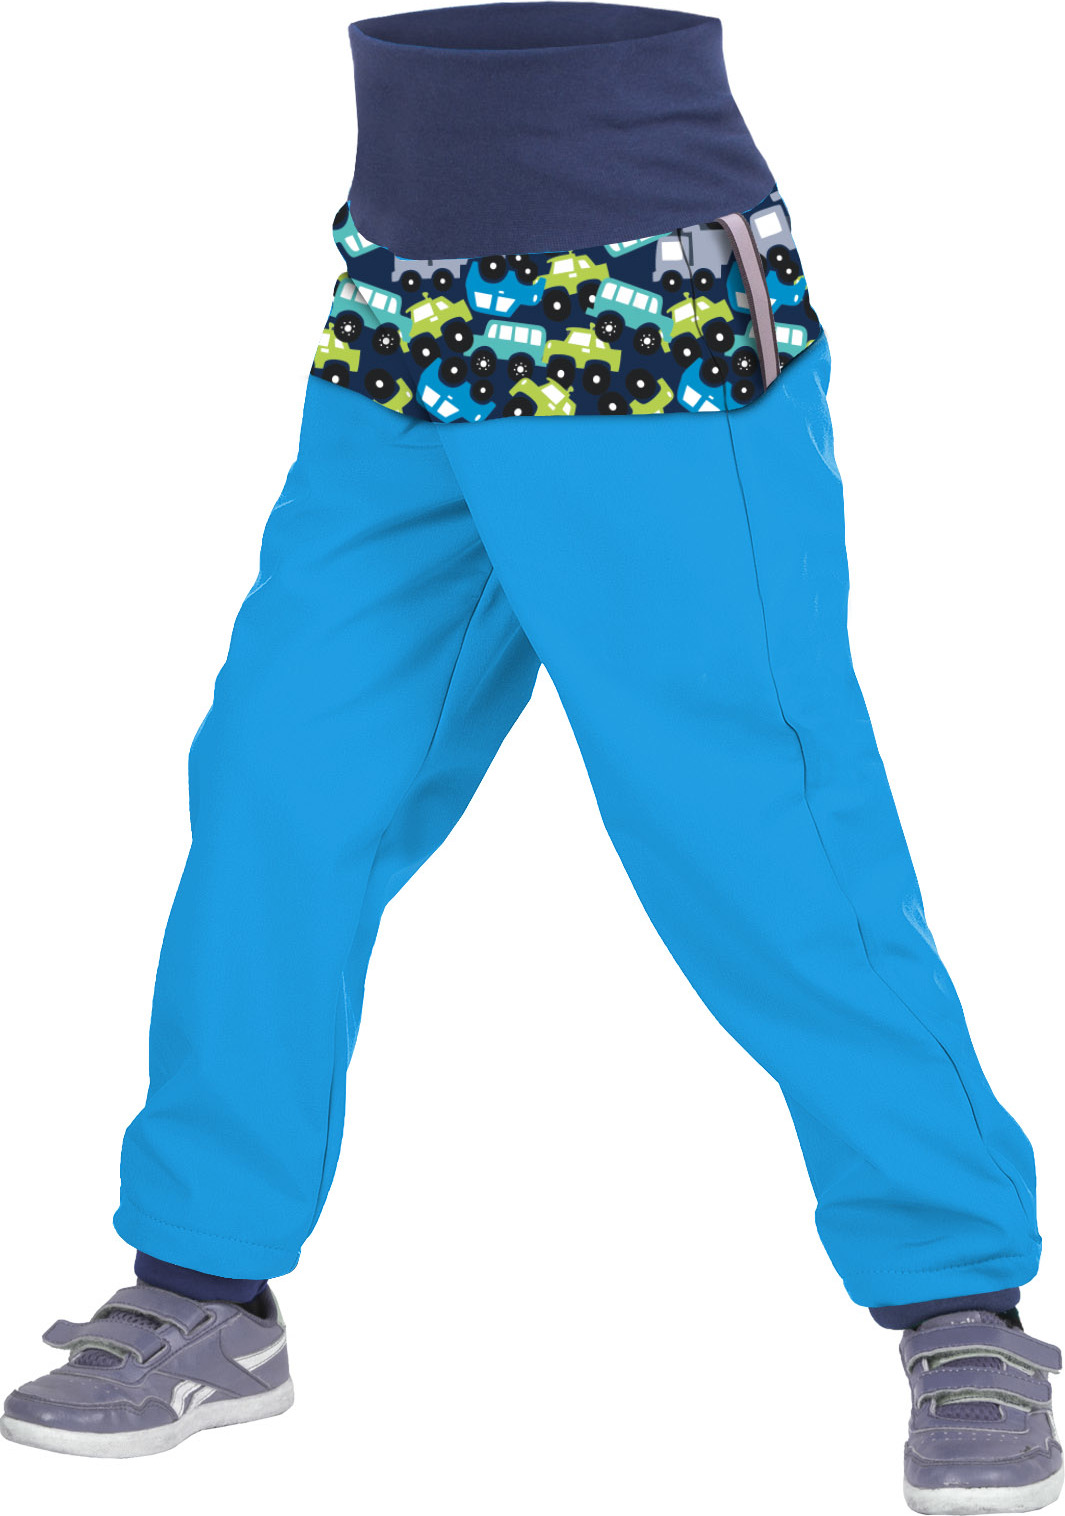 Batolecí softshellové kalhoty UNUO s fleecem Autíčka tyrkysové (Softshell toodler trousers) Velikost: 86/92